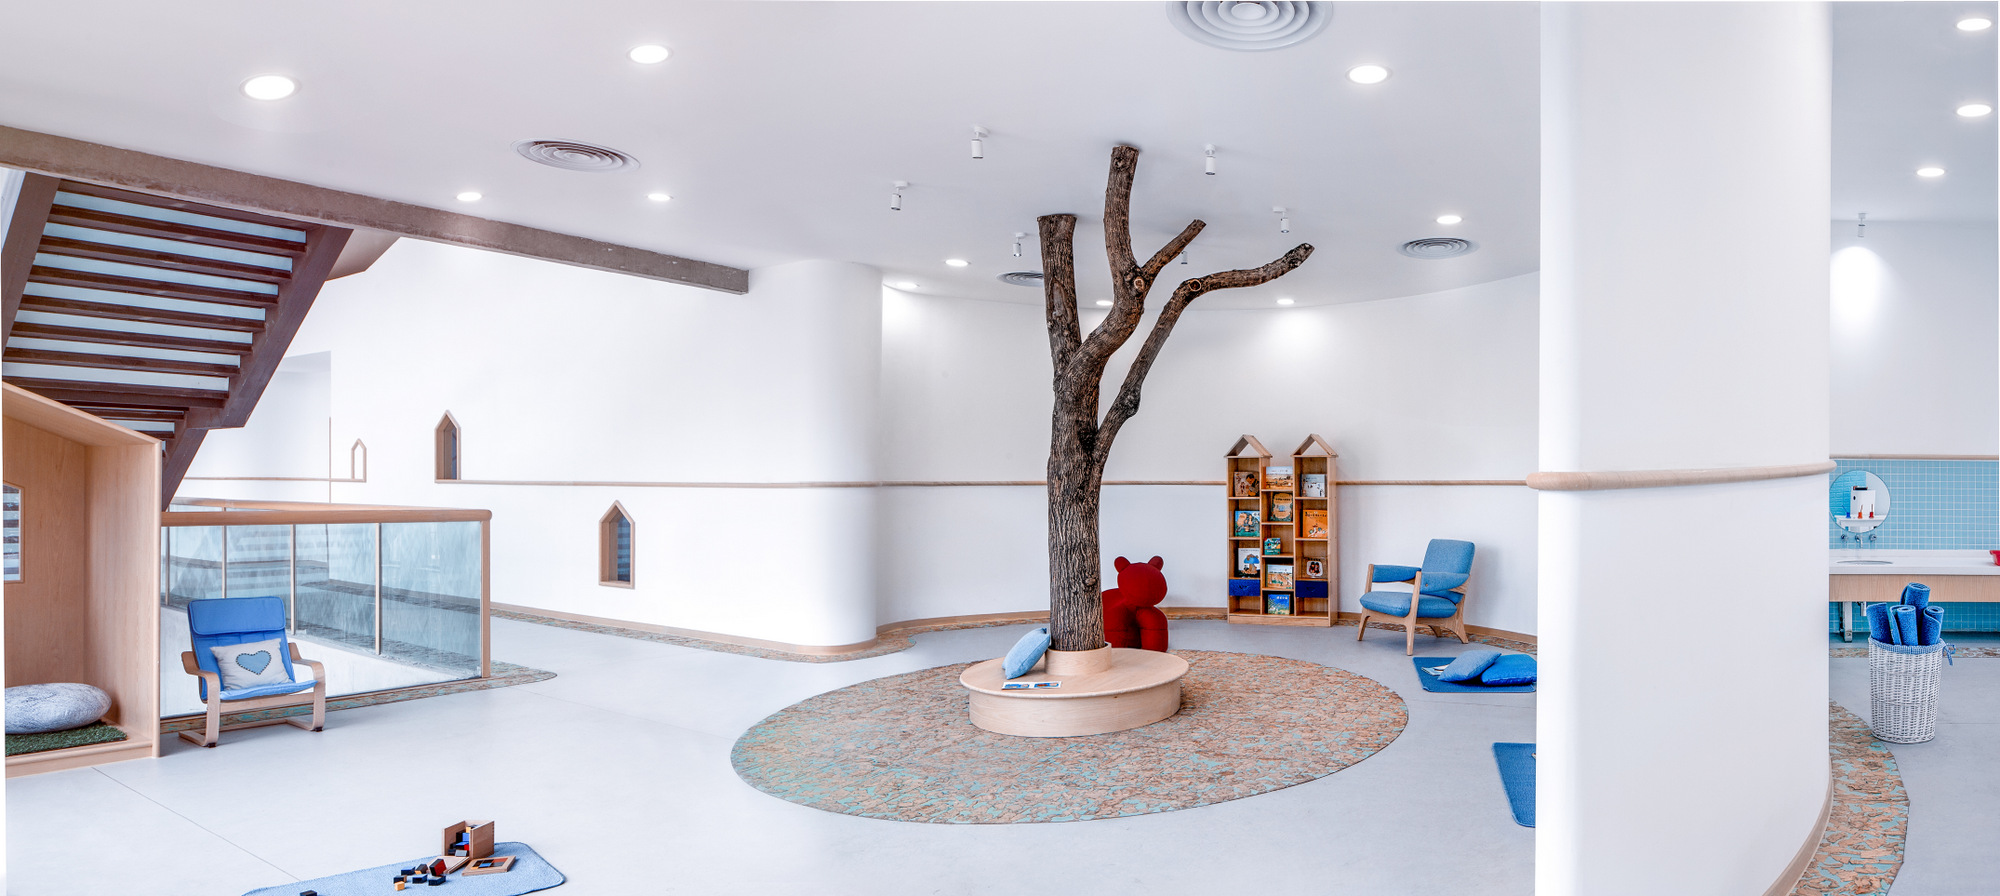 图片[12]|蒙台梭利北京幼儿园|ART-Arrakis | 建筑室内设计的创新与灵感